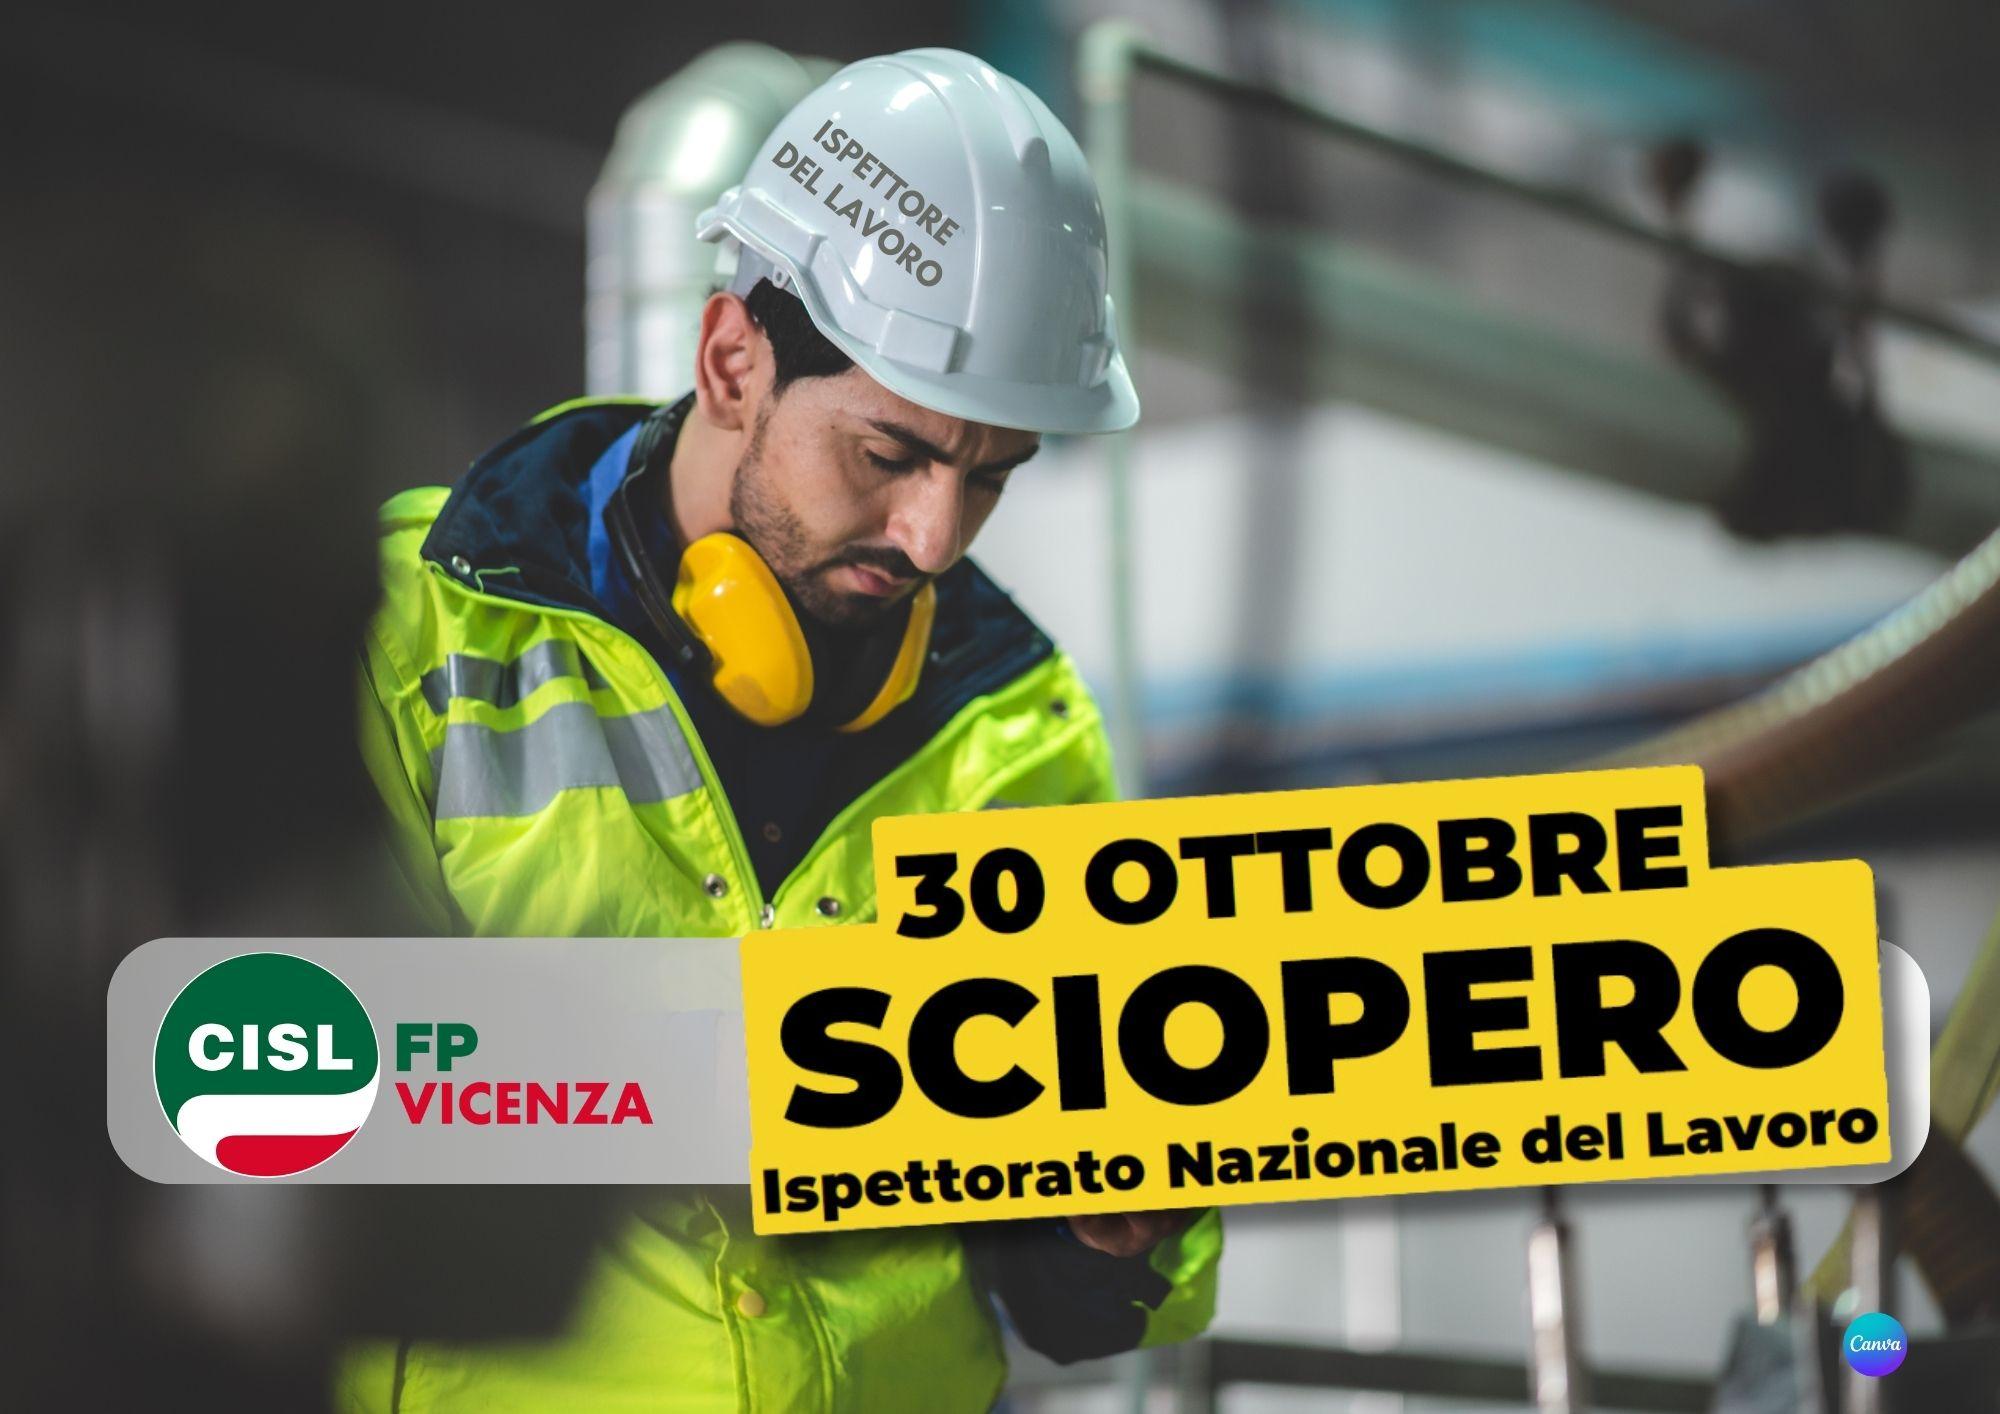 CISL FP Vicenza. 30 ottobre sciopero Ispettorato Nazionale del Lavoro. La situazione. Le richieste